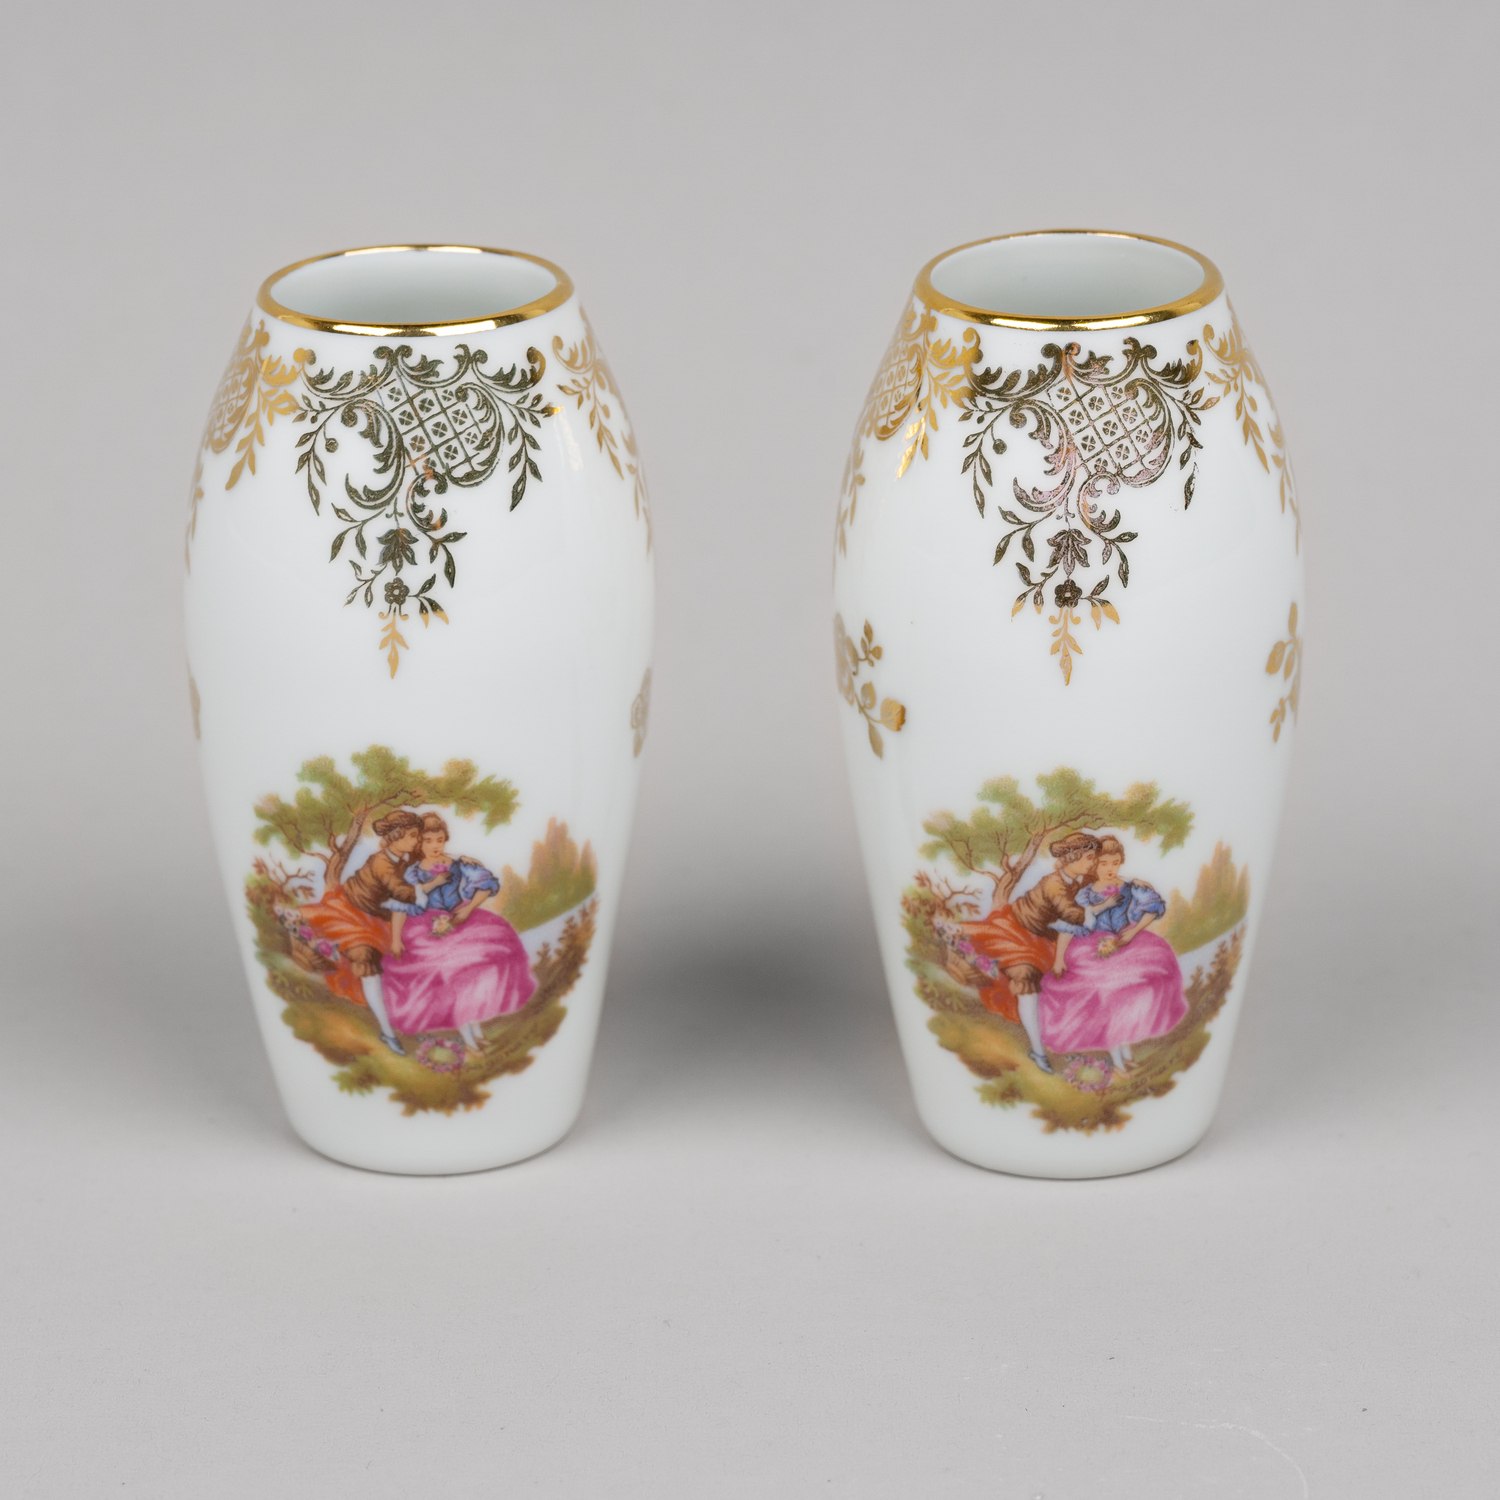 Парные вазочки с галантными сценами и узорами золотом.<br>Франция, Лимож, вторая половина ХХ века.